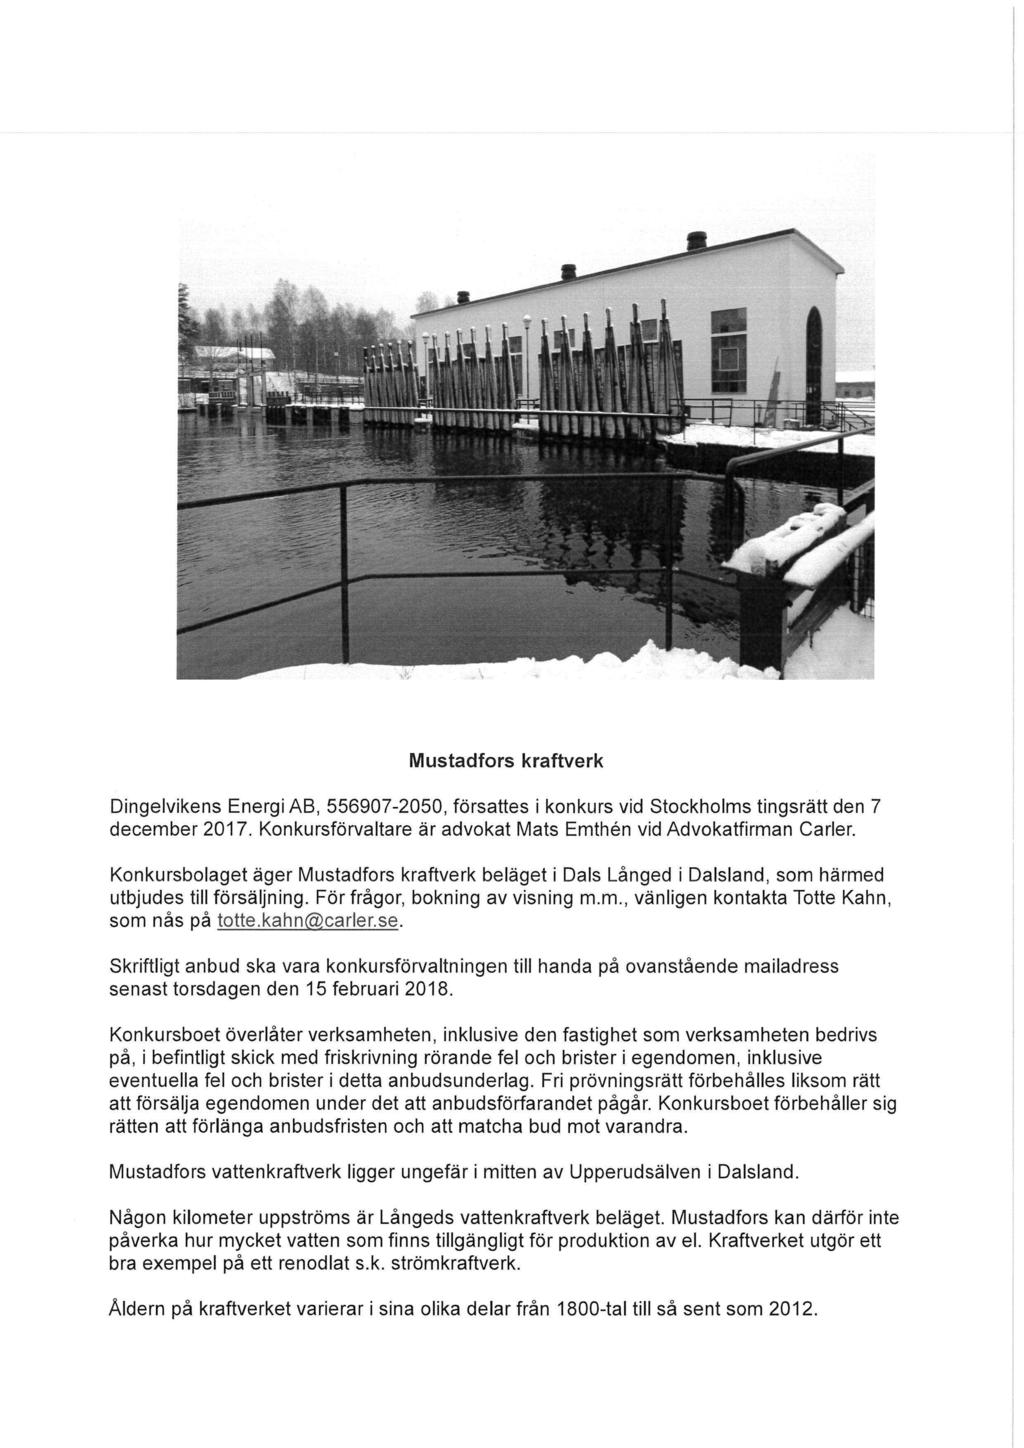 Mustadfors kraftverk Dingelvikens Energi AB, 556907-2050, försattes i konkurs vid Stockholms tingsrätt den 7 december 2017. Konkursförvaltare är advokat Mats Emthén vid Advokatfirman Carier.